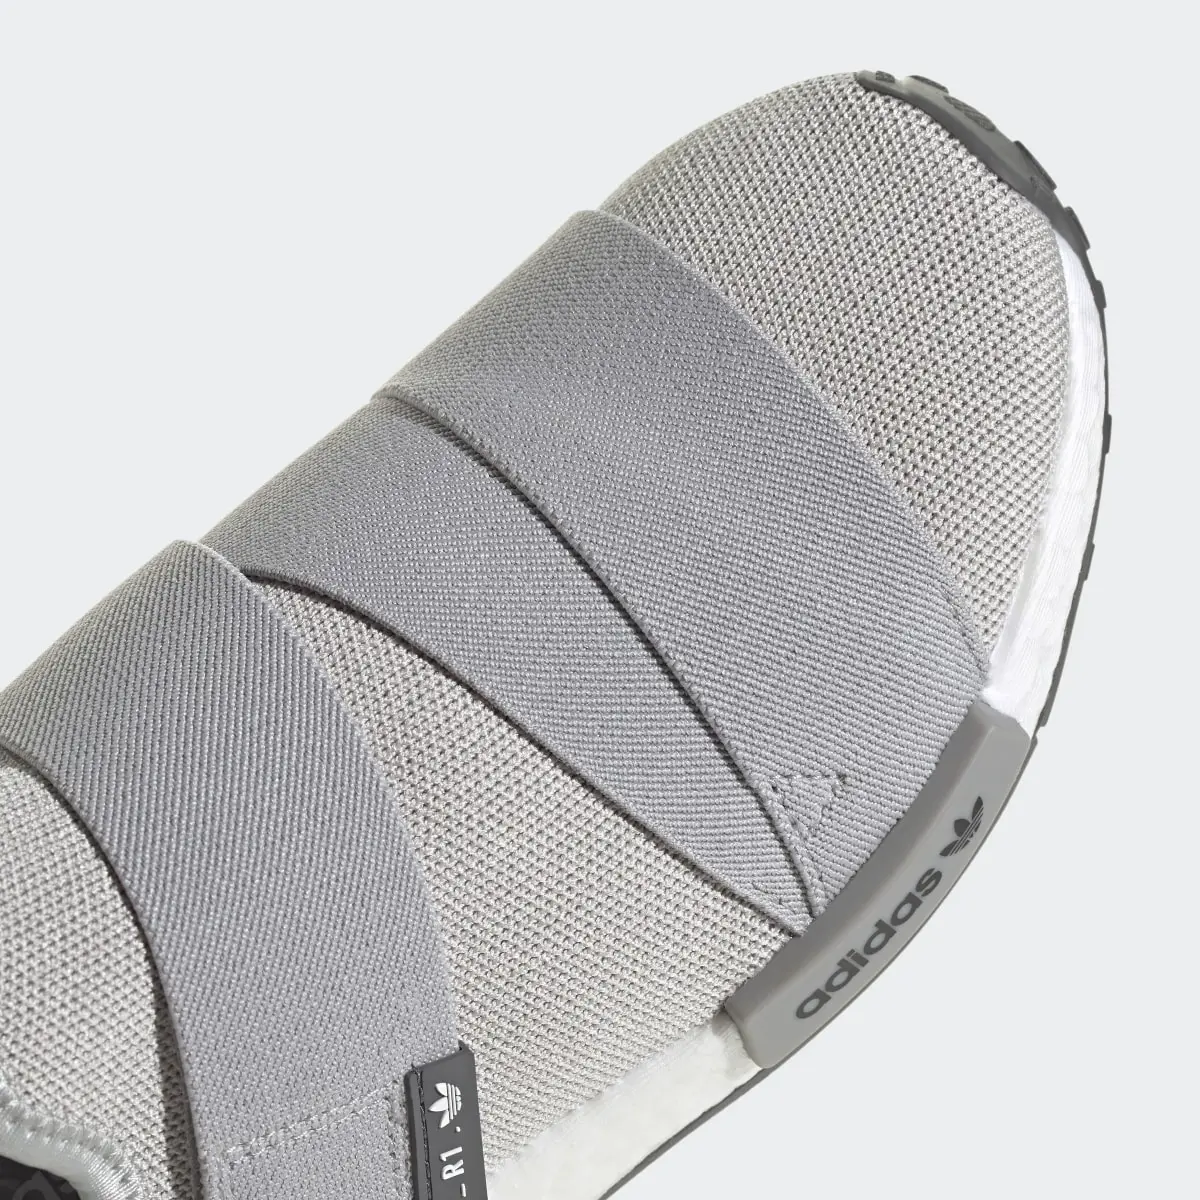 Adidas NMD_R1 Strap Schuh. 3